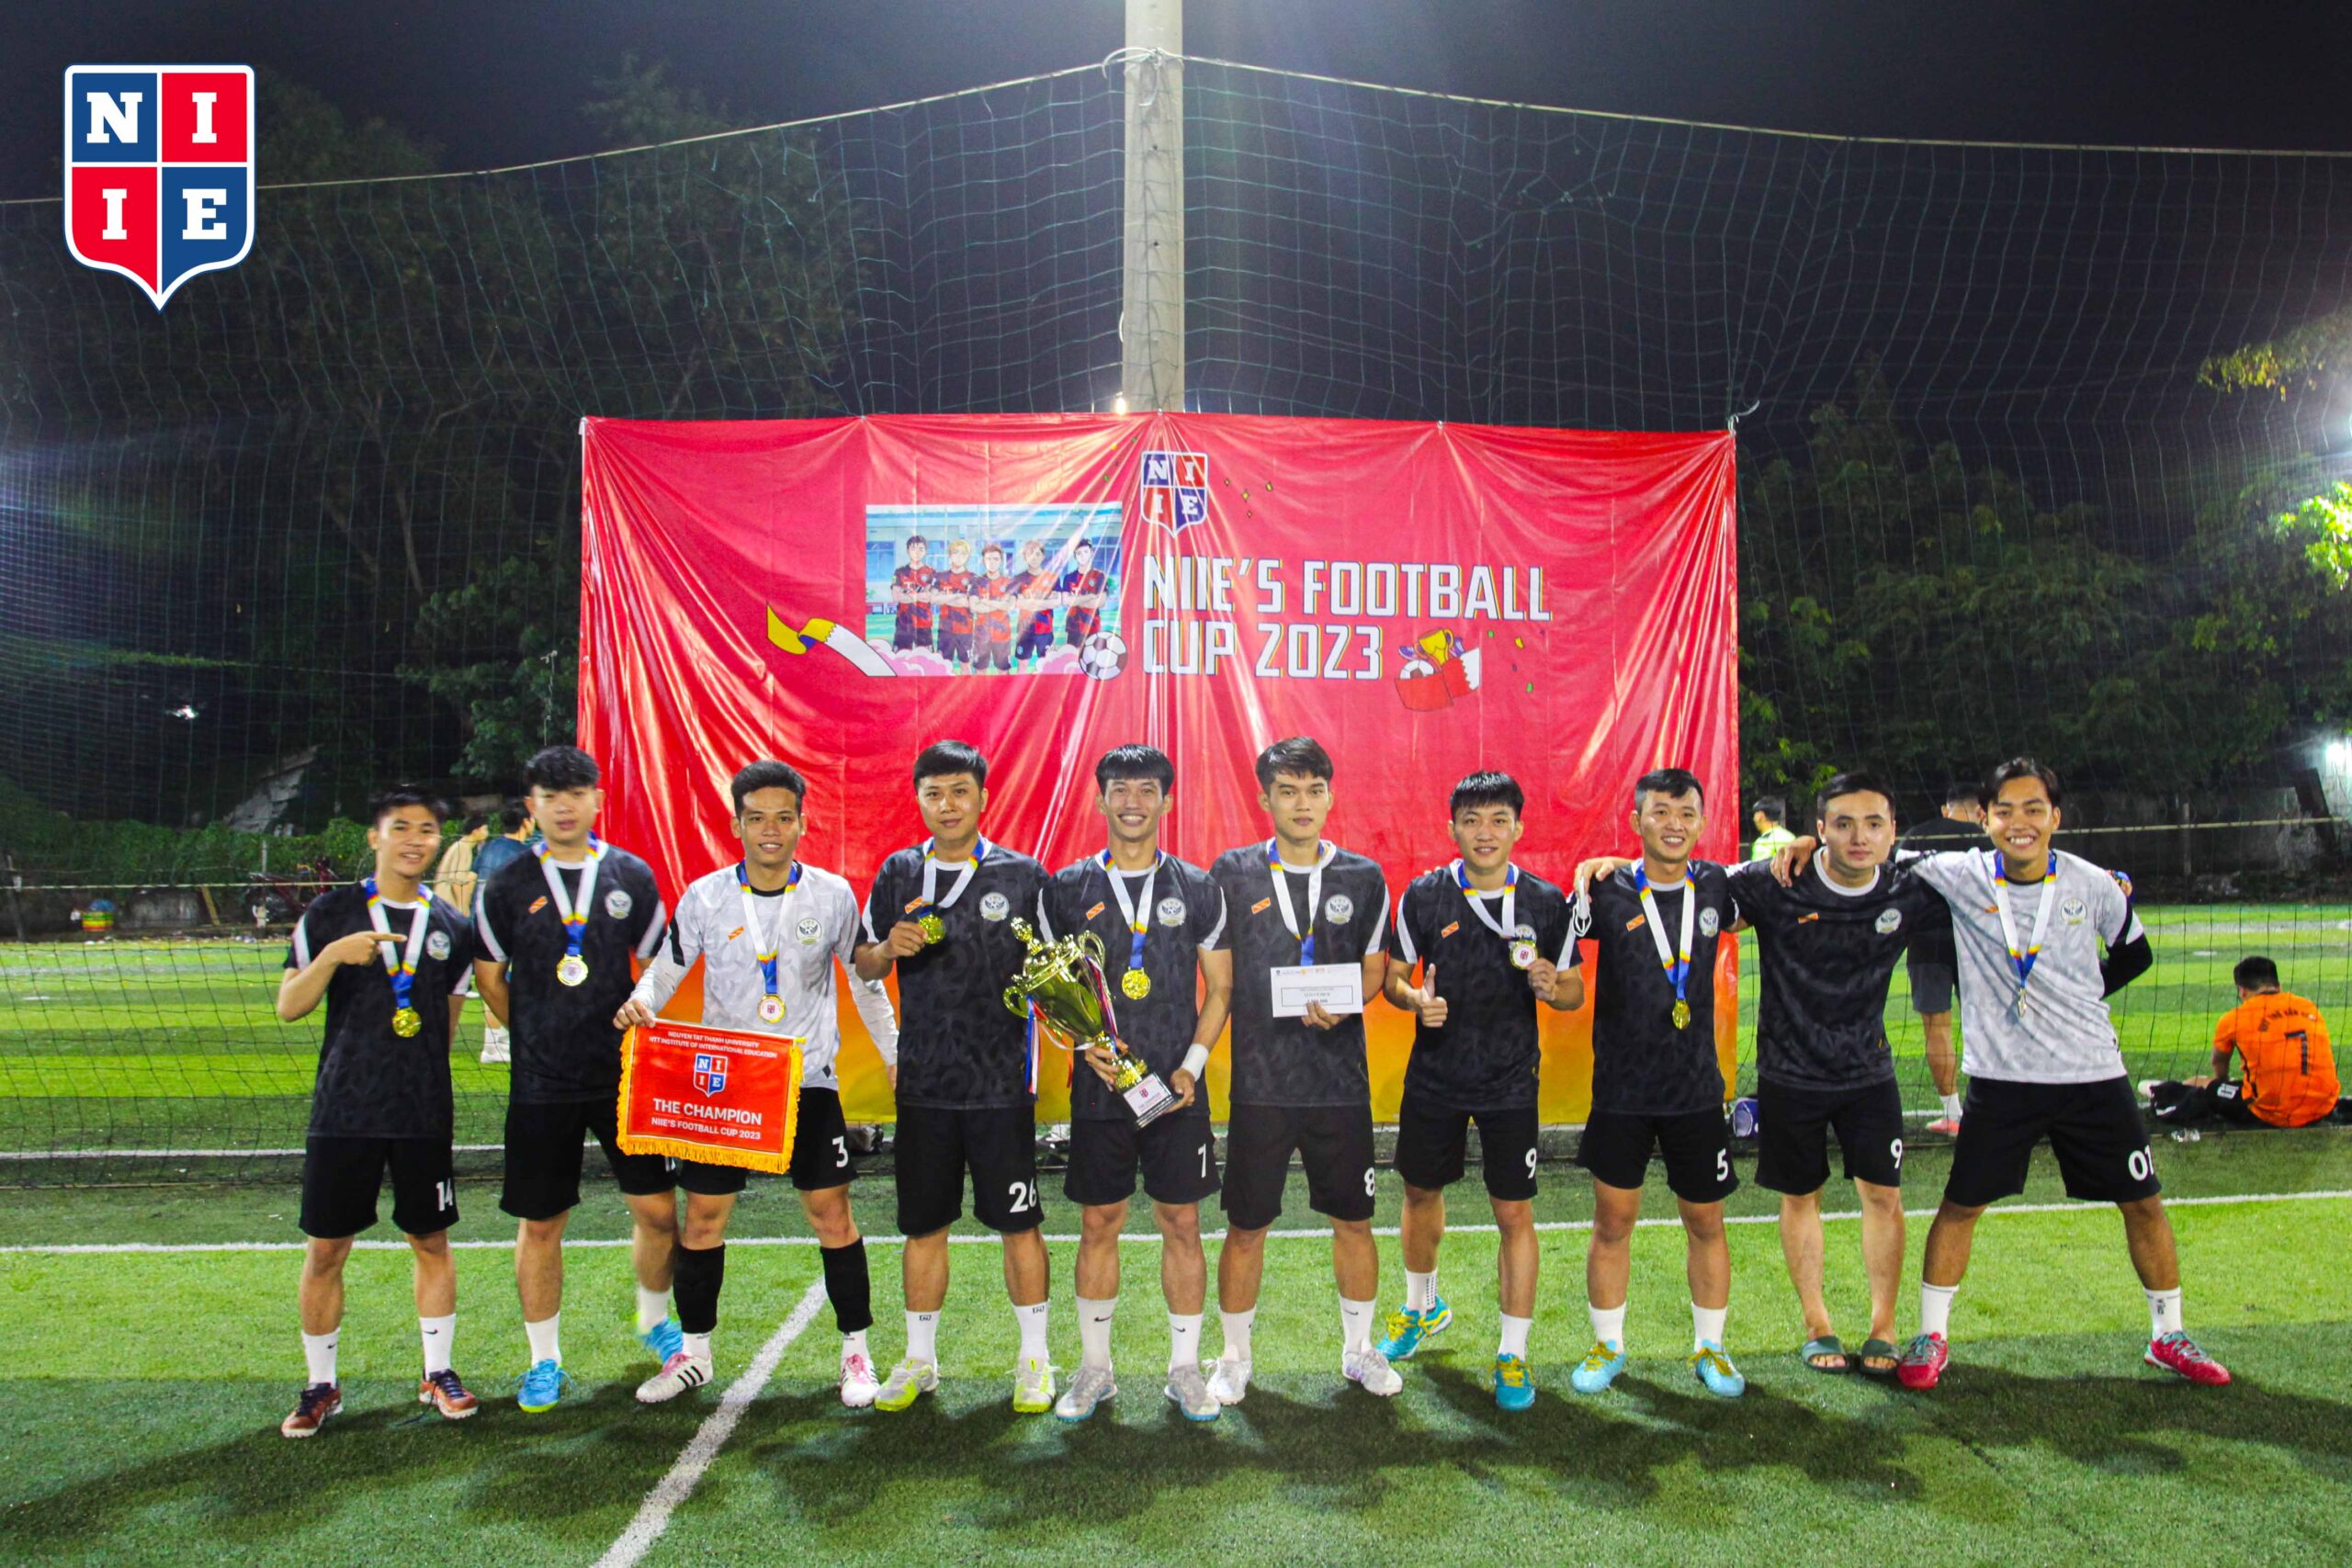 Hình ảnh Tân Vương của NIIE’s Football Cup: Top 1 Sever